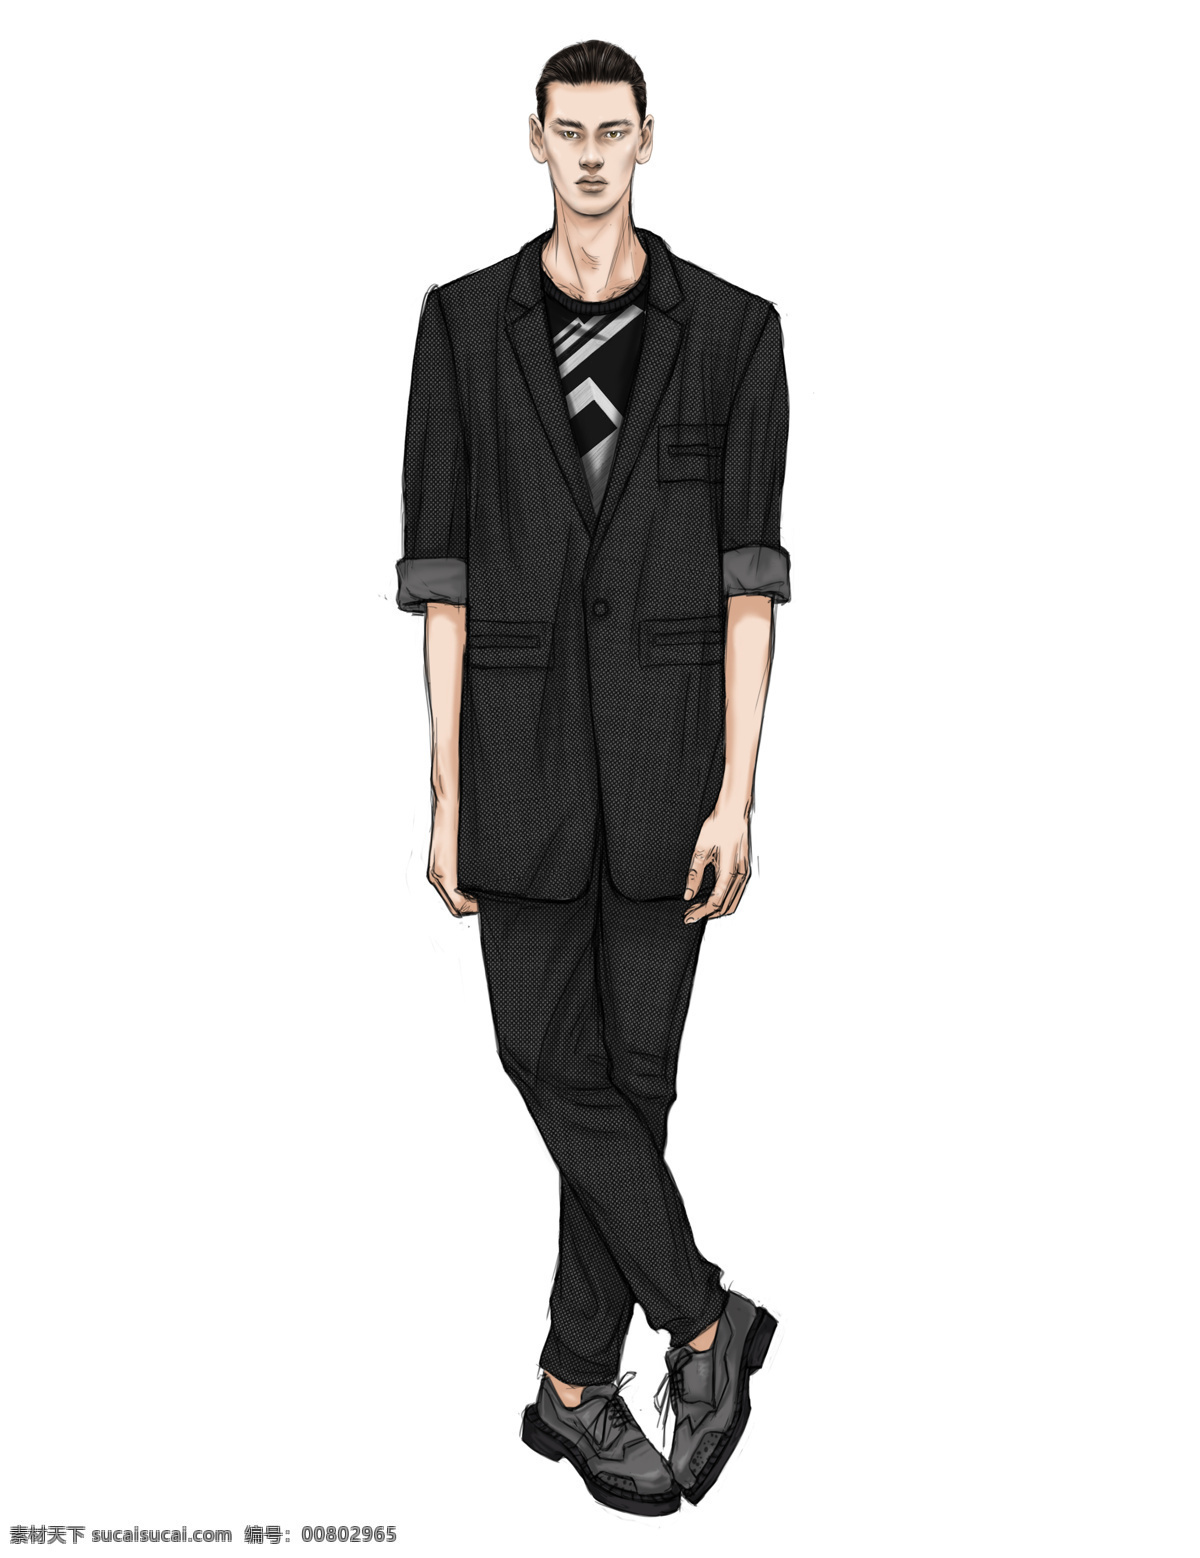 时尚 黑色 西装 男装 效果图 服装设计 黑色裤子 黑色西装 男装效果图 时尚男装